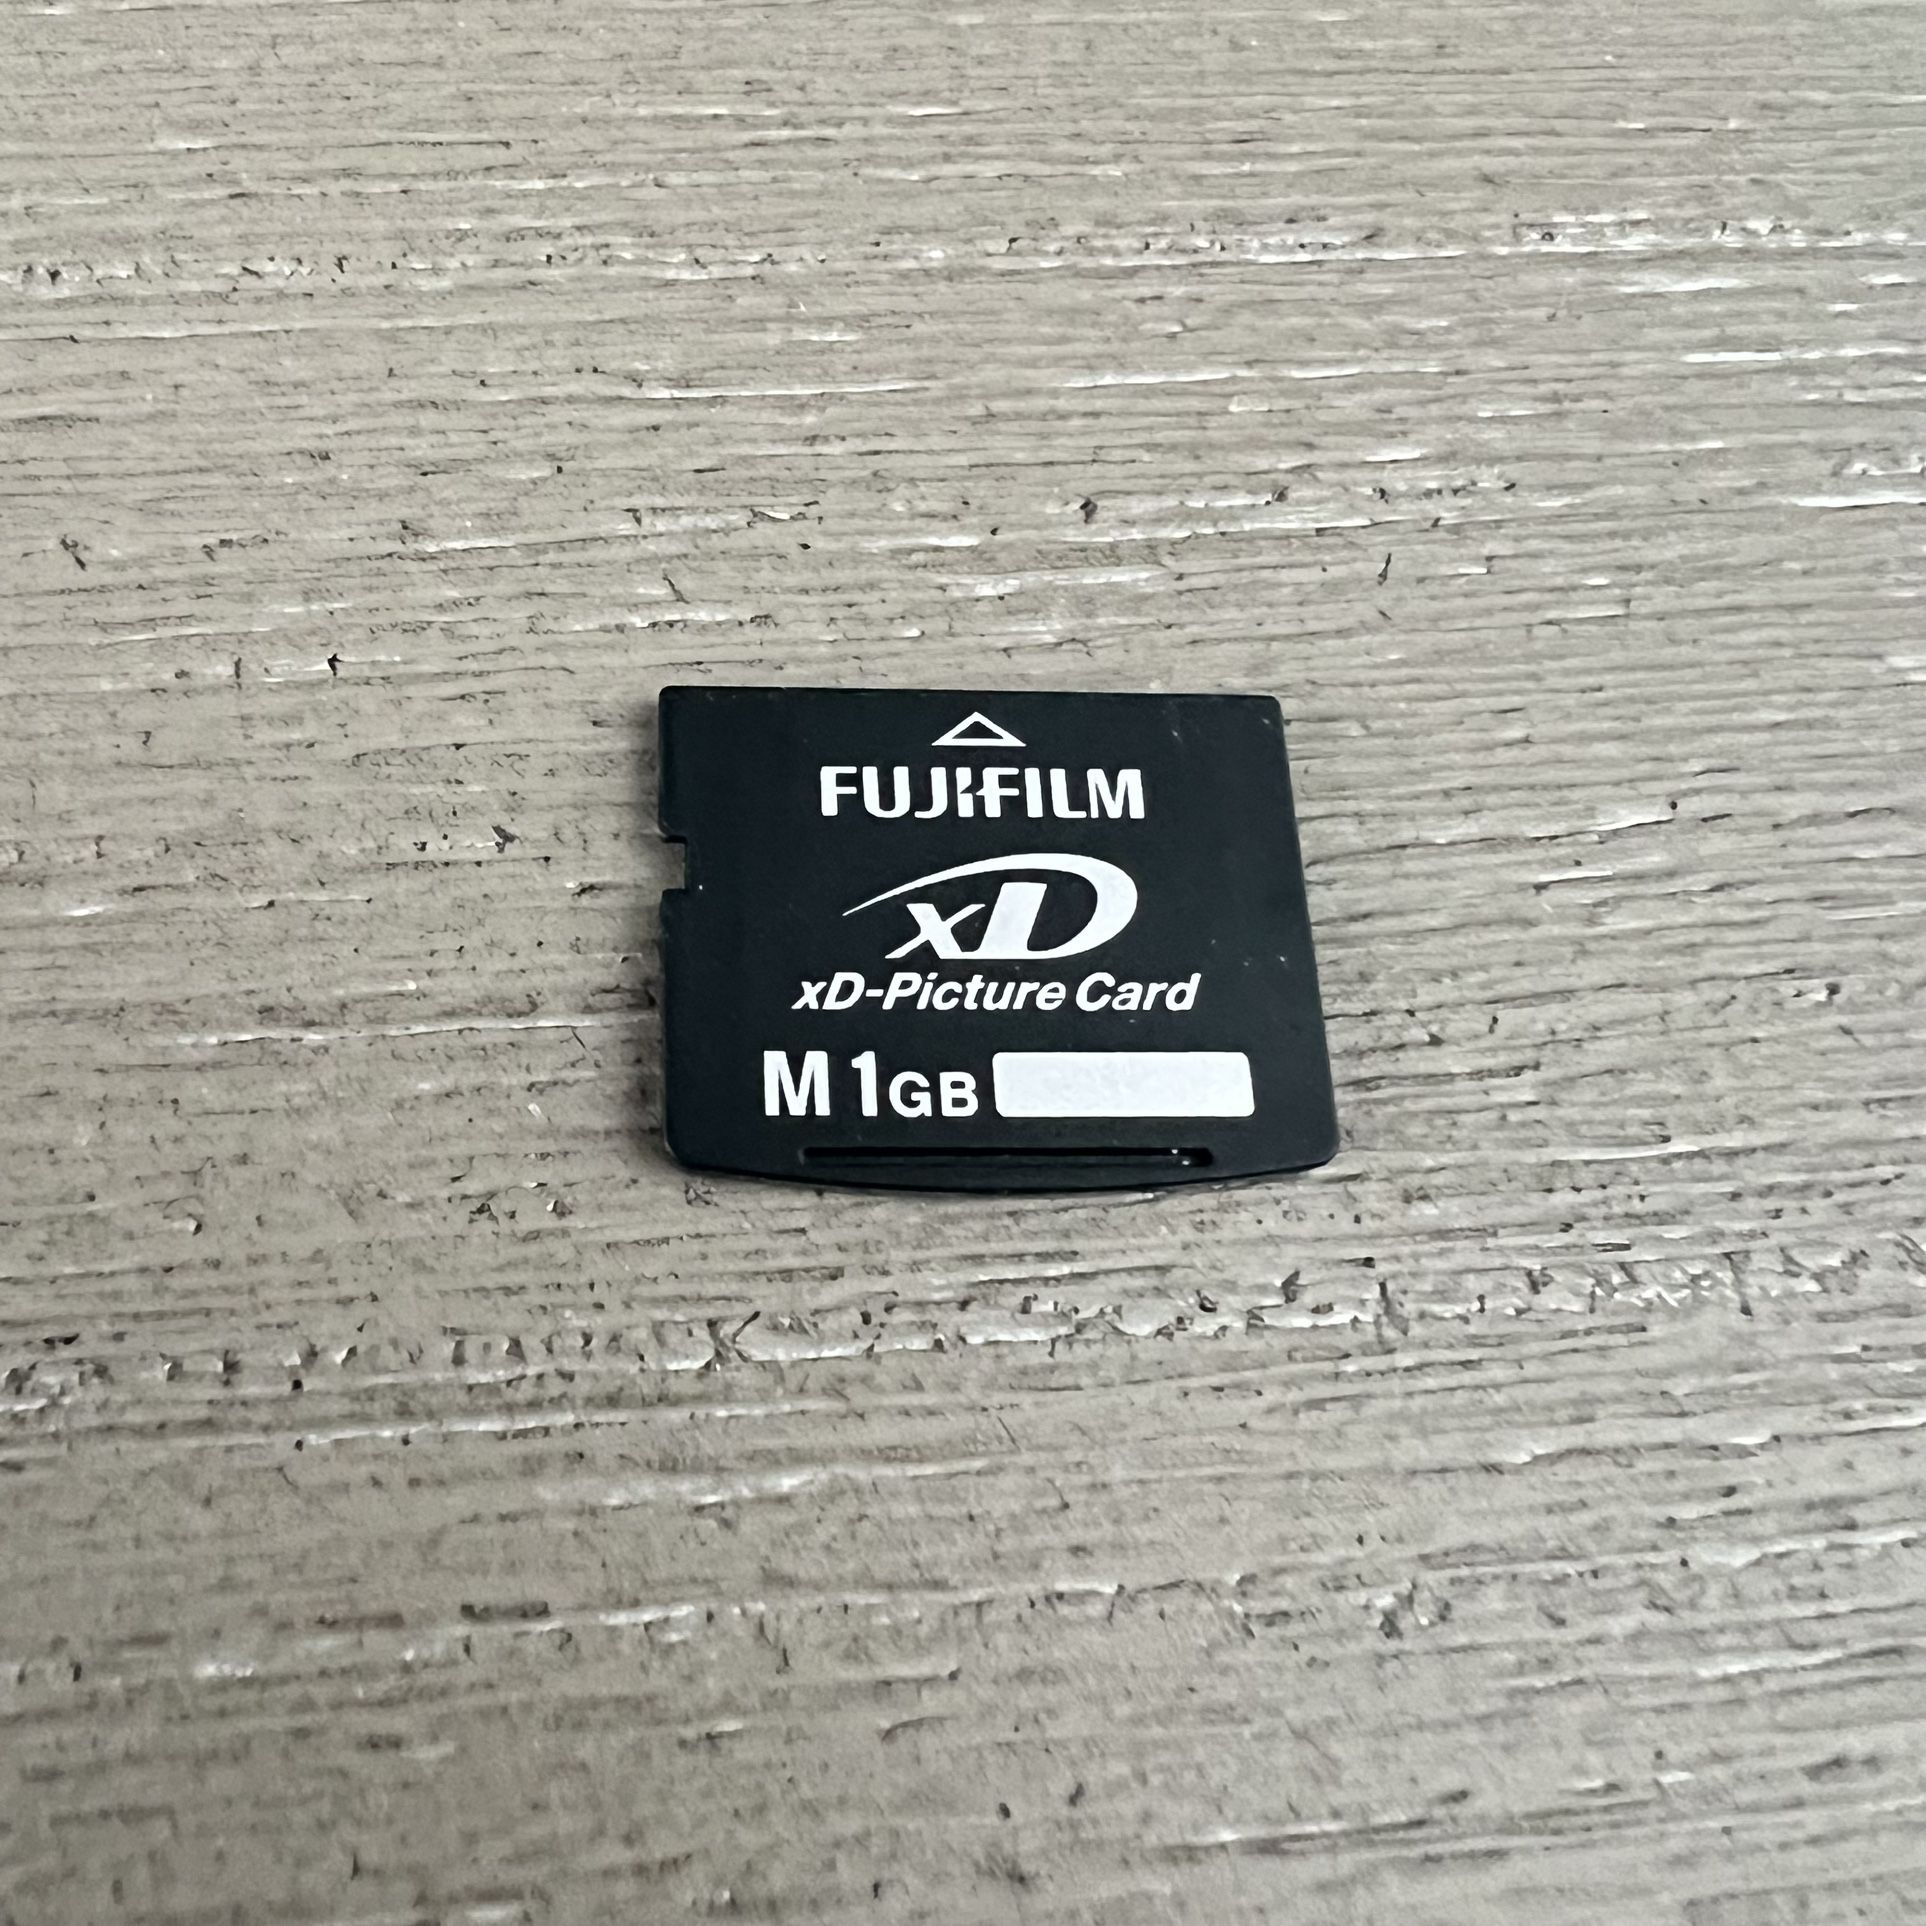 1 GB Fujifilm XD Memory Card Type M FujiFilm 1GB xD-Picture Card M